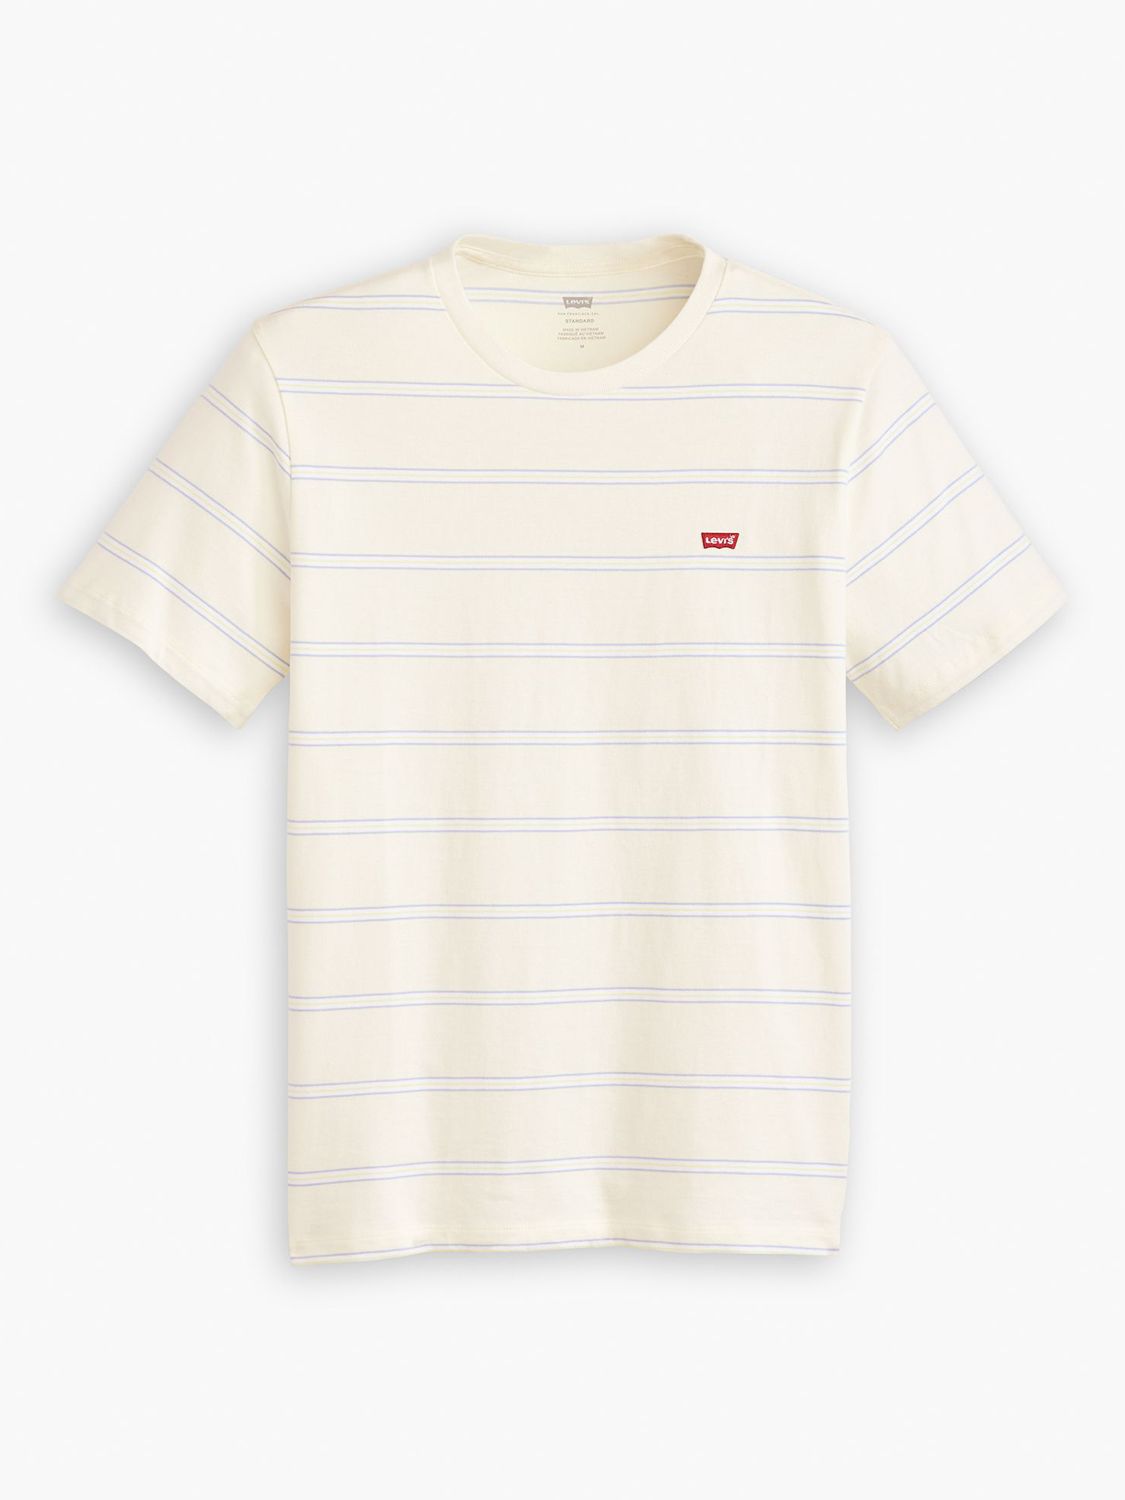 Levi's Original Housemark Seaside Stripe T-Shirt, Egret, S